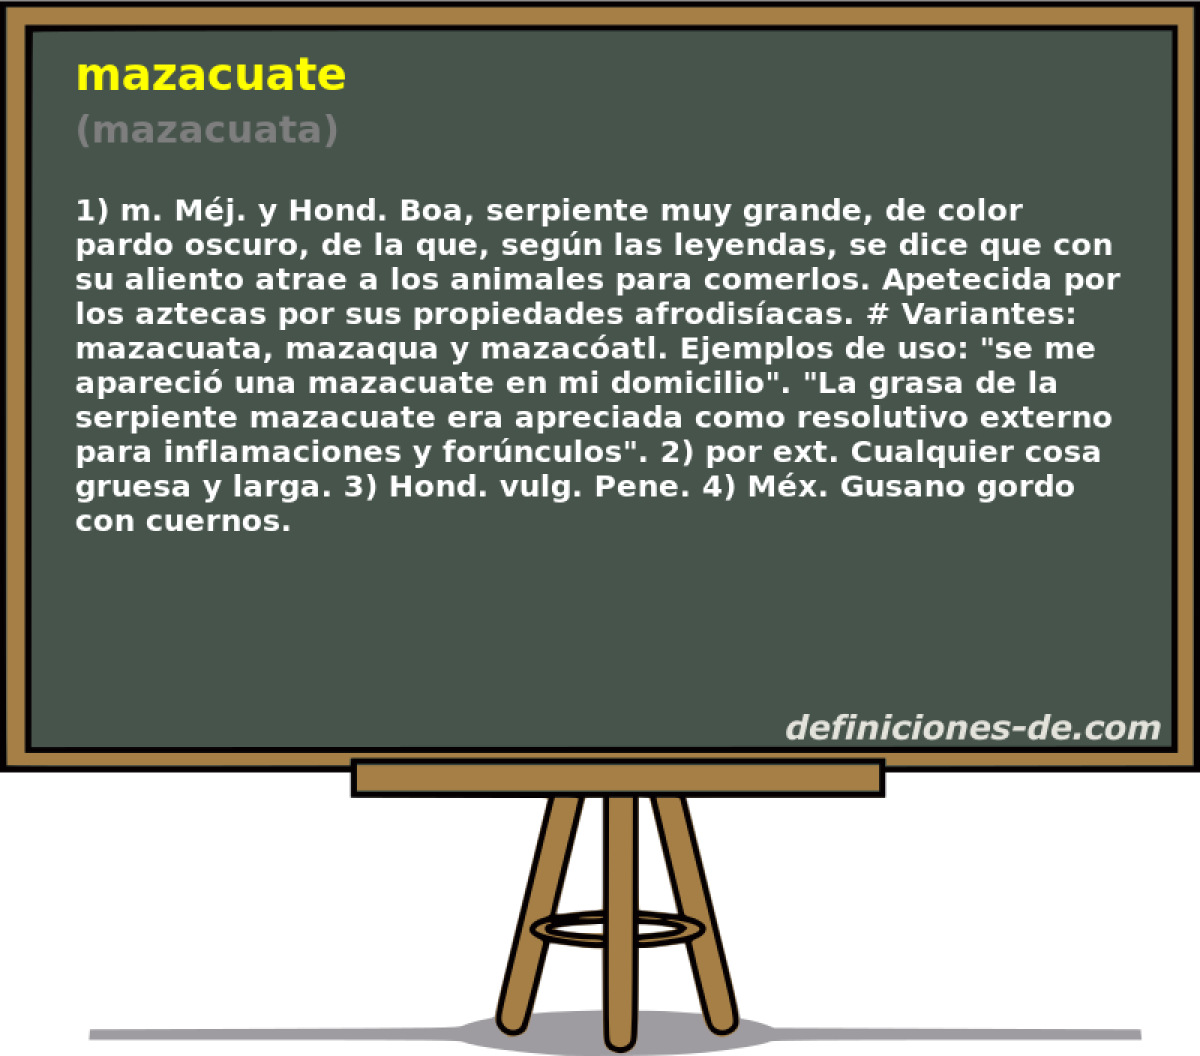 mazacuate (mazacuata)